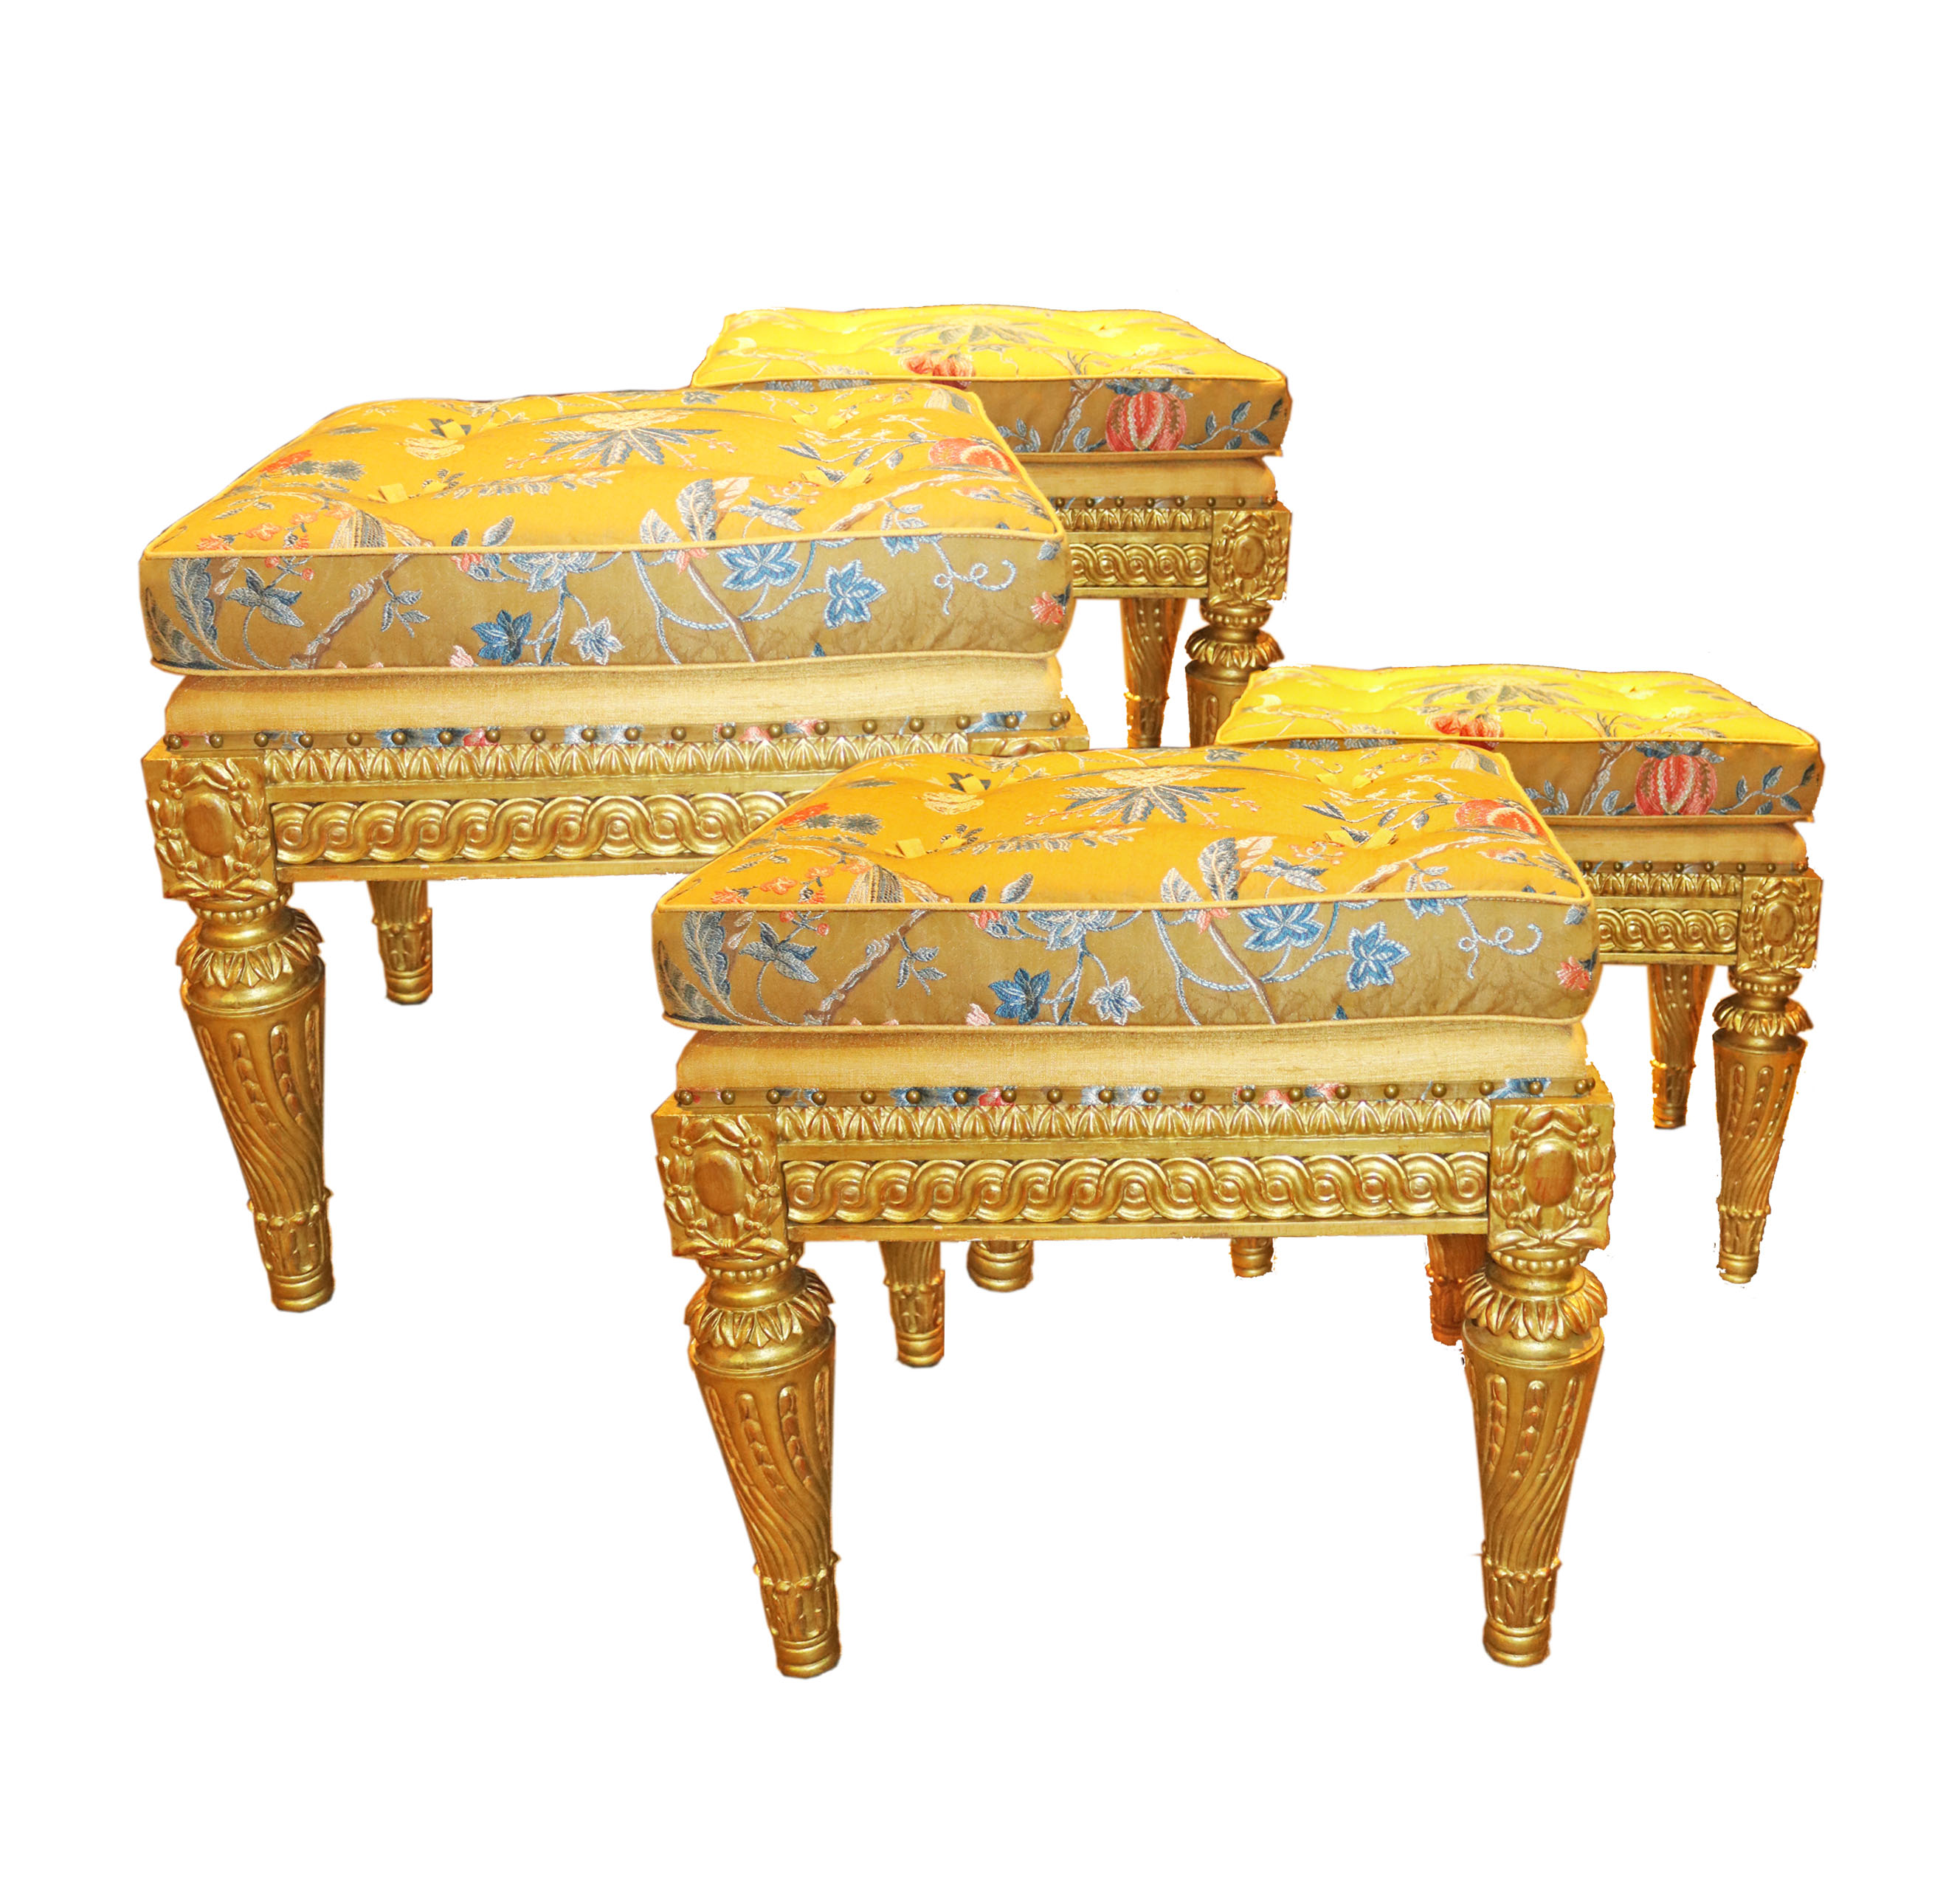 A Set of Four Elegant 19th C. Italian Louis XVI Giltwood Benches No. 4779